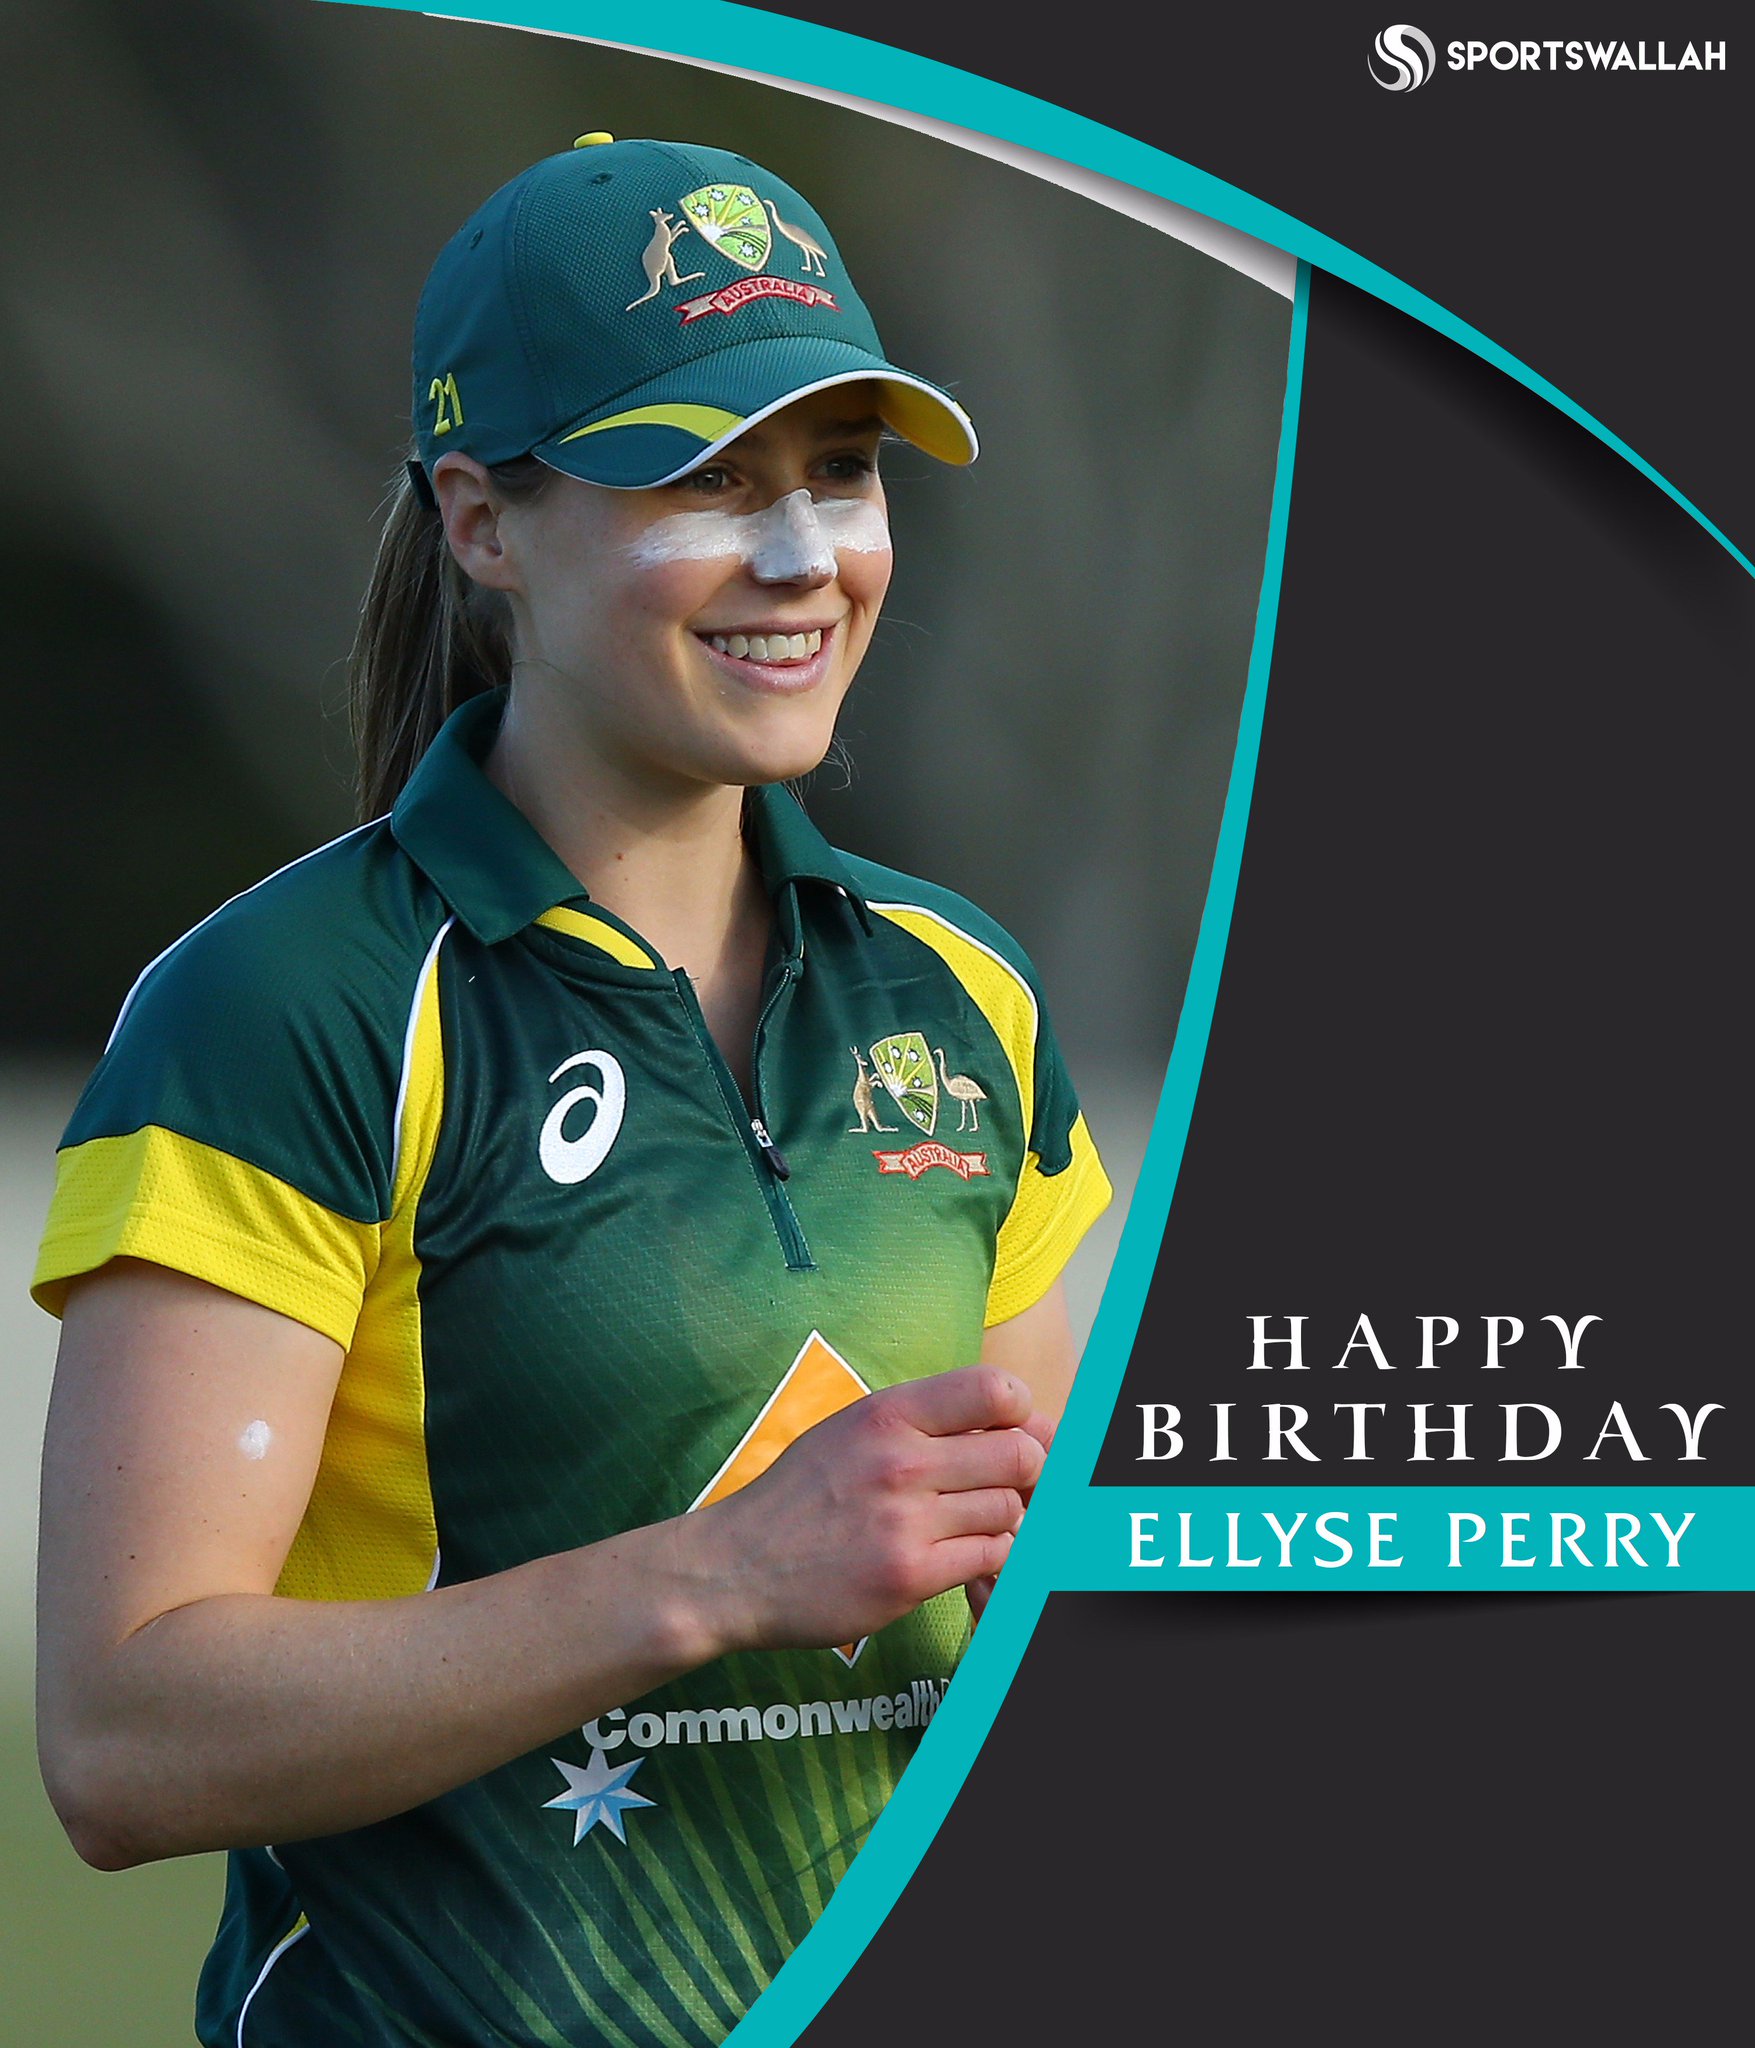 Happy Birthday, Ellyse Perry! 